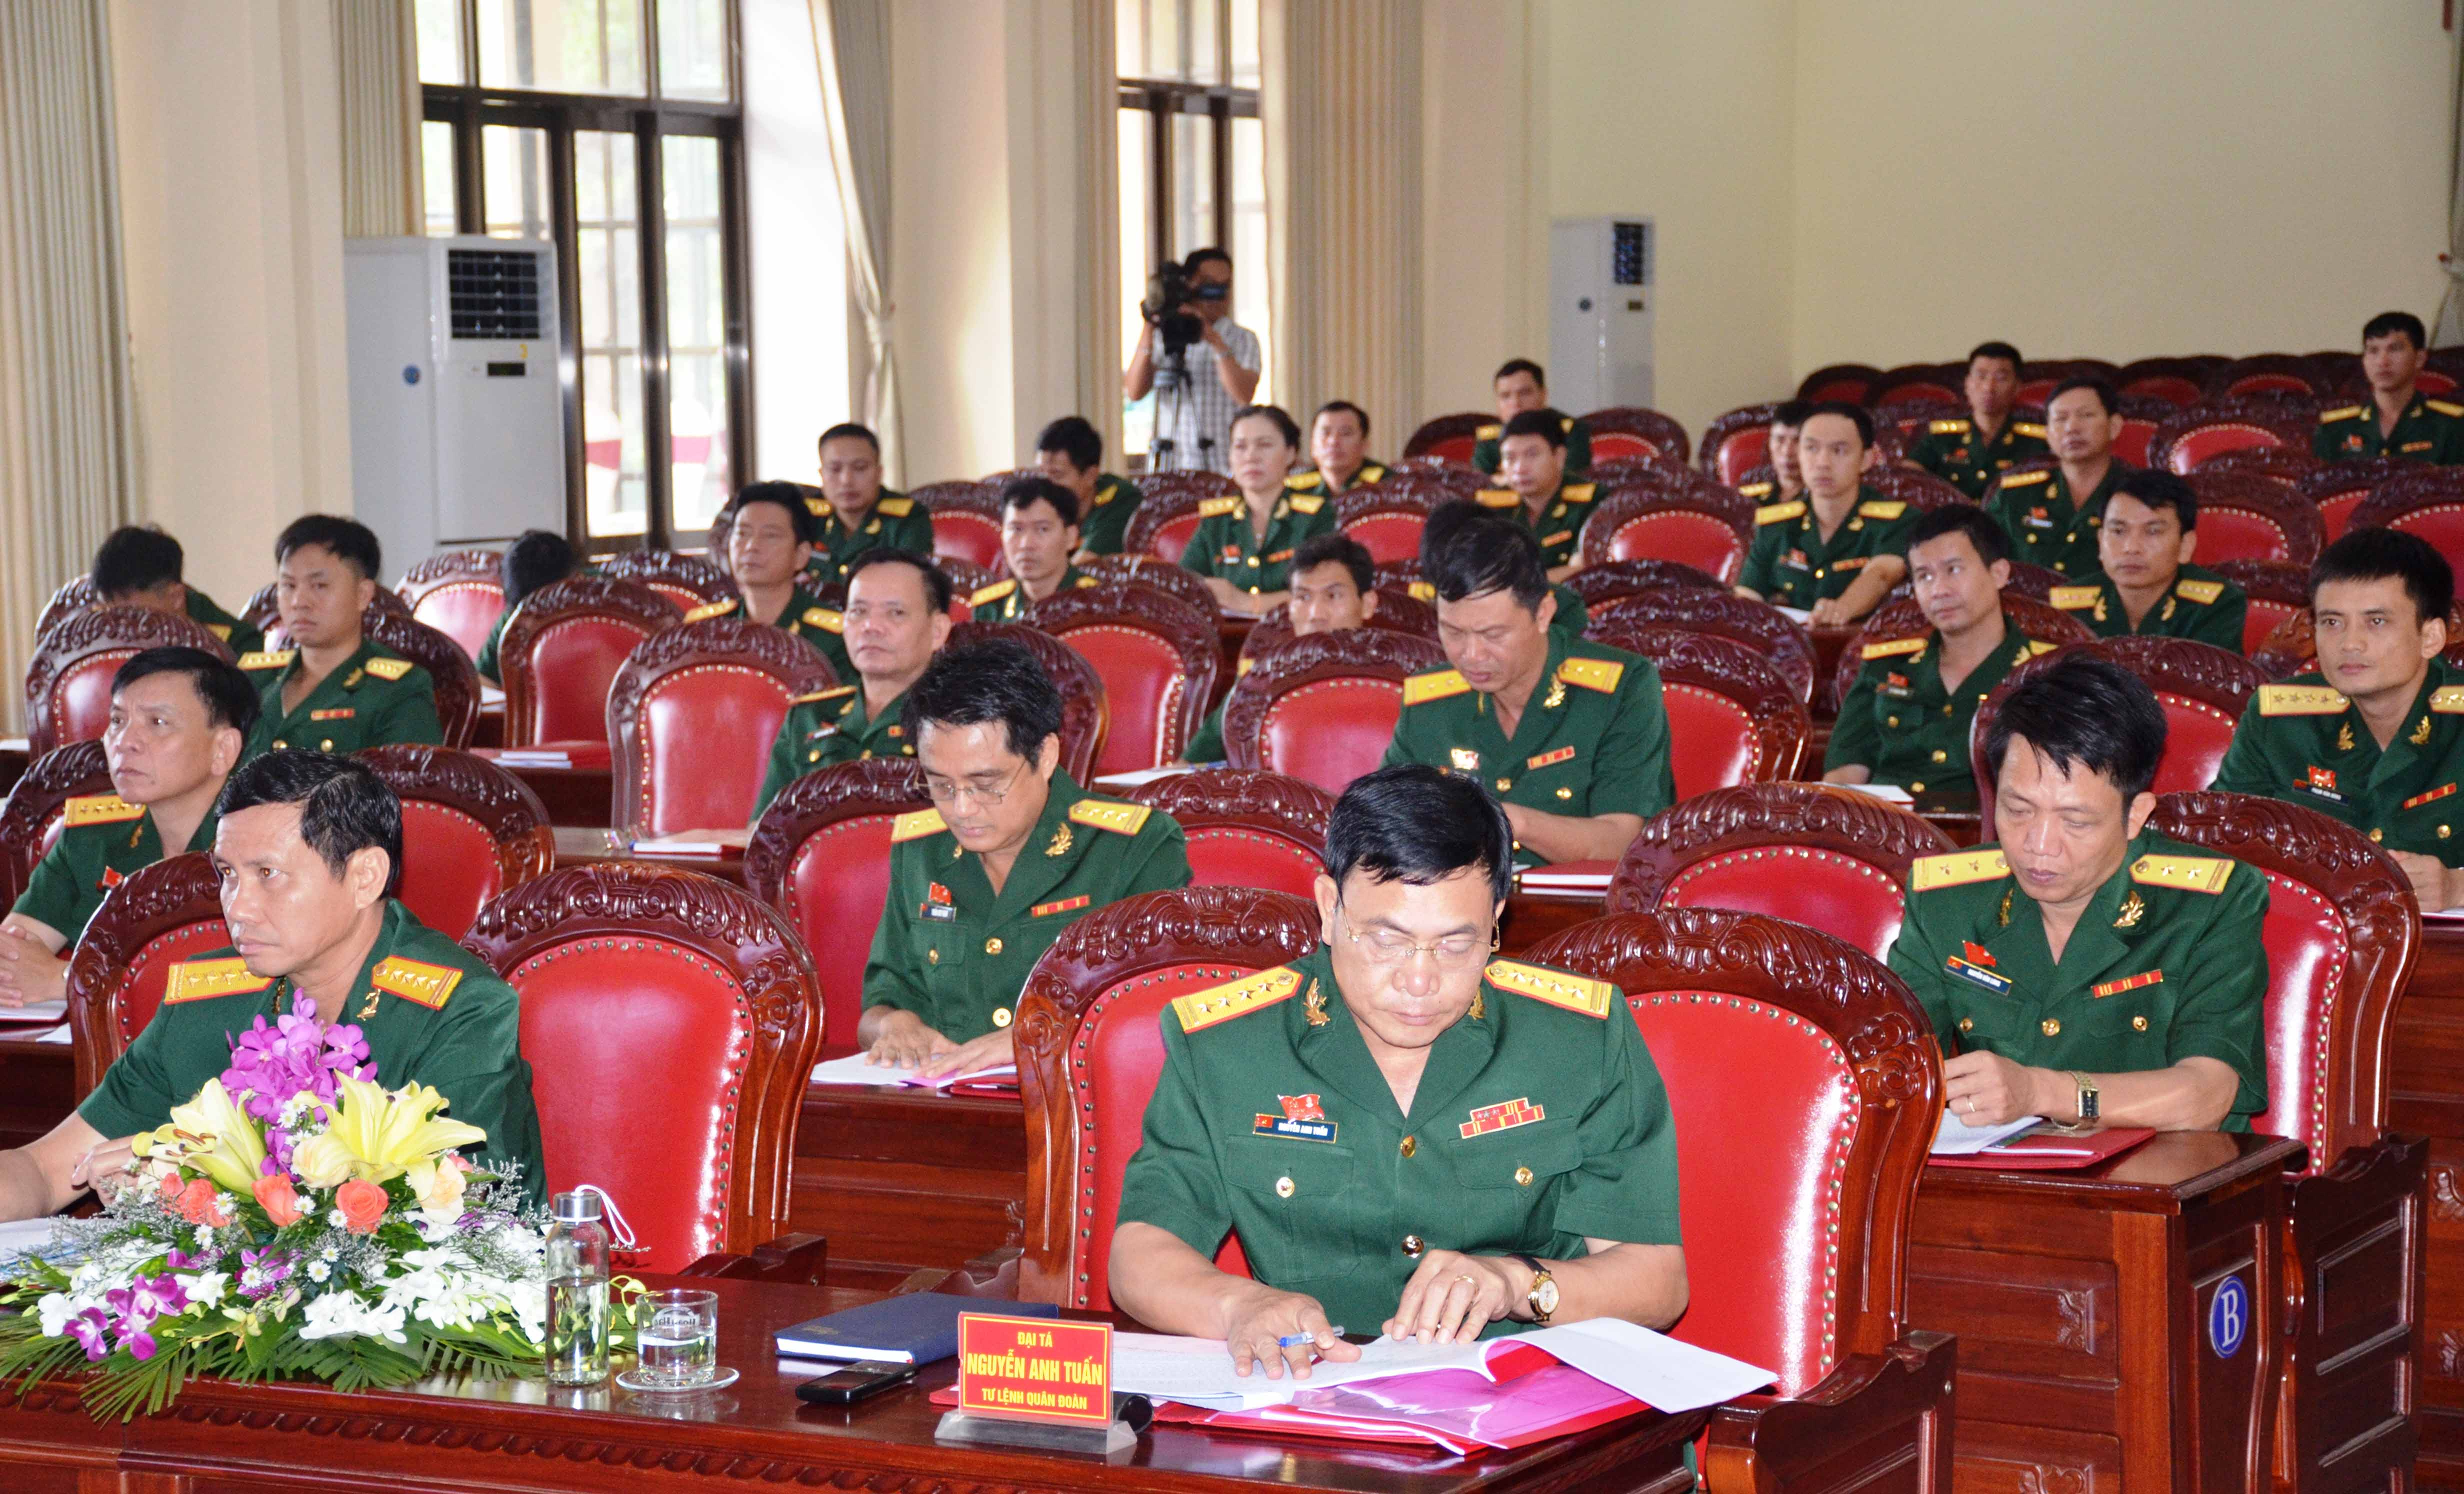 Đại tá Nguyễn Anh Tuấn-Tư lênh Quân đoàn dự và chỉ đạo đại hội. Ảnh: Vĩnh Hoàng